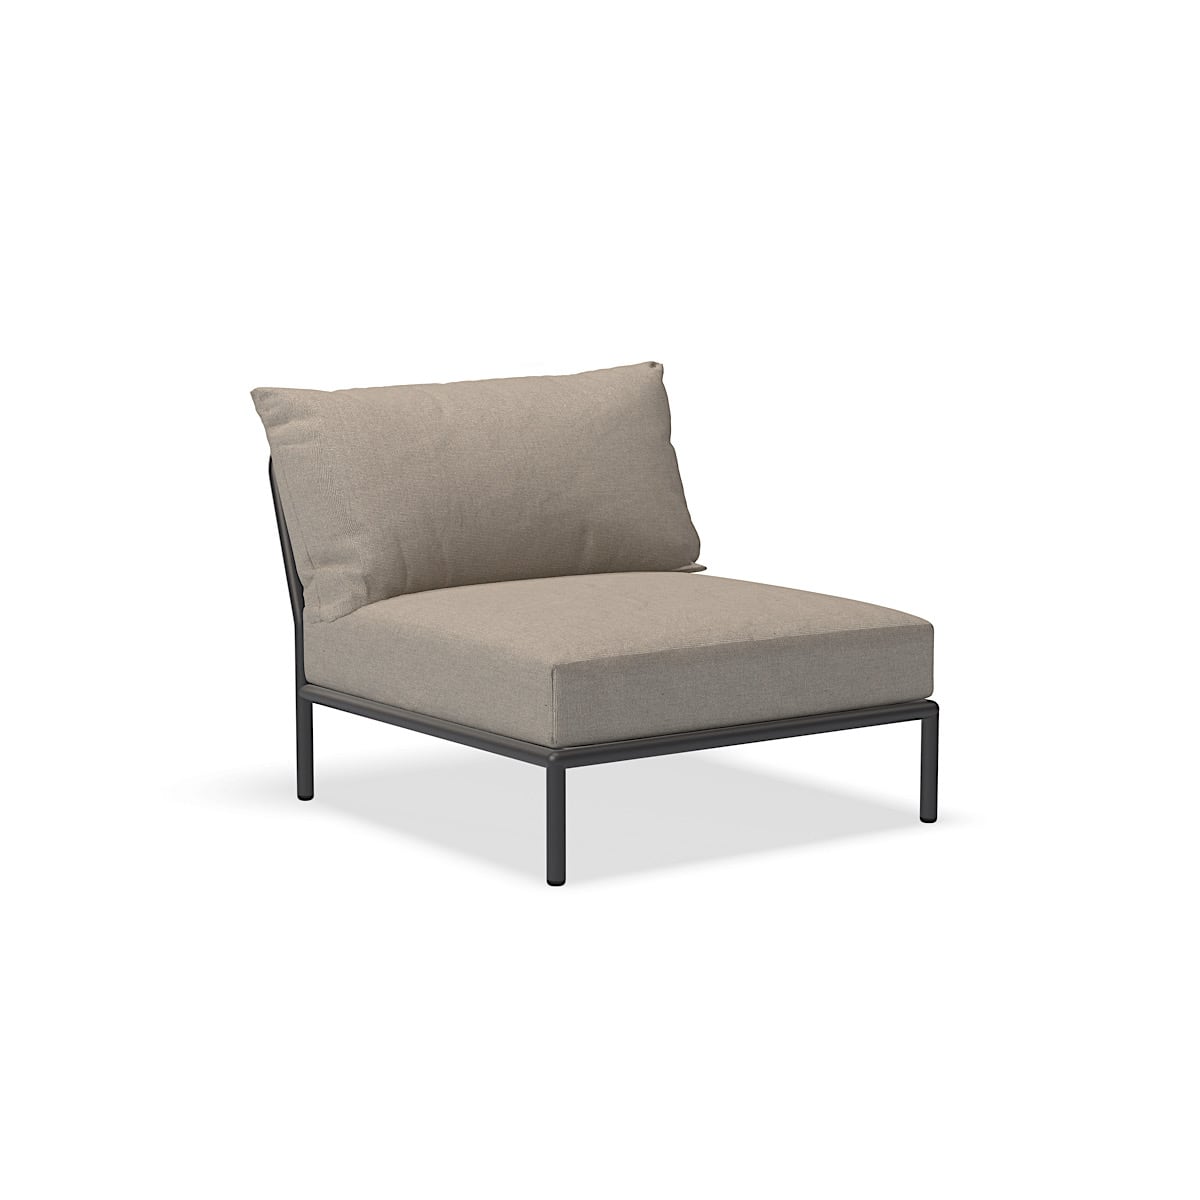 Cadeira - 22205-9251 - Cadeira, Ash (HERITAGE), estrutura cinza escuro